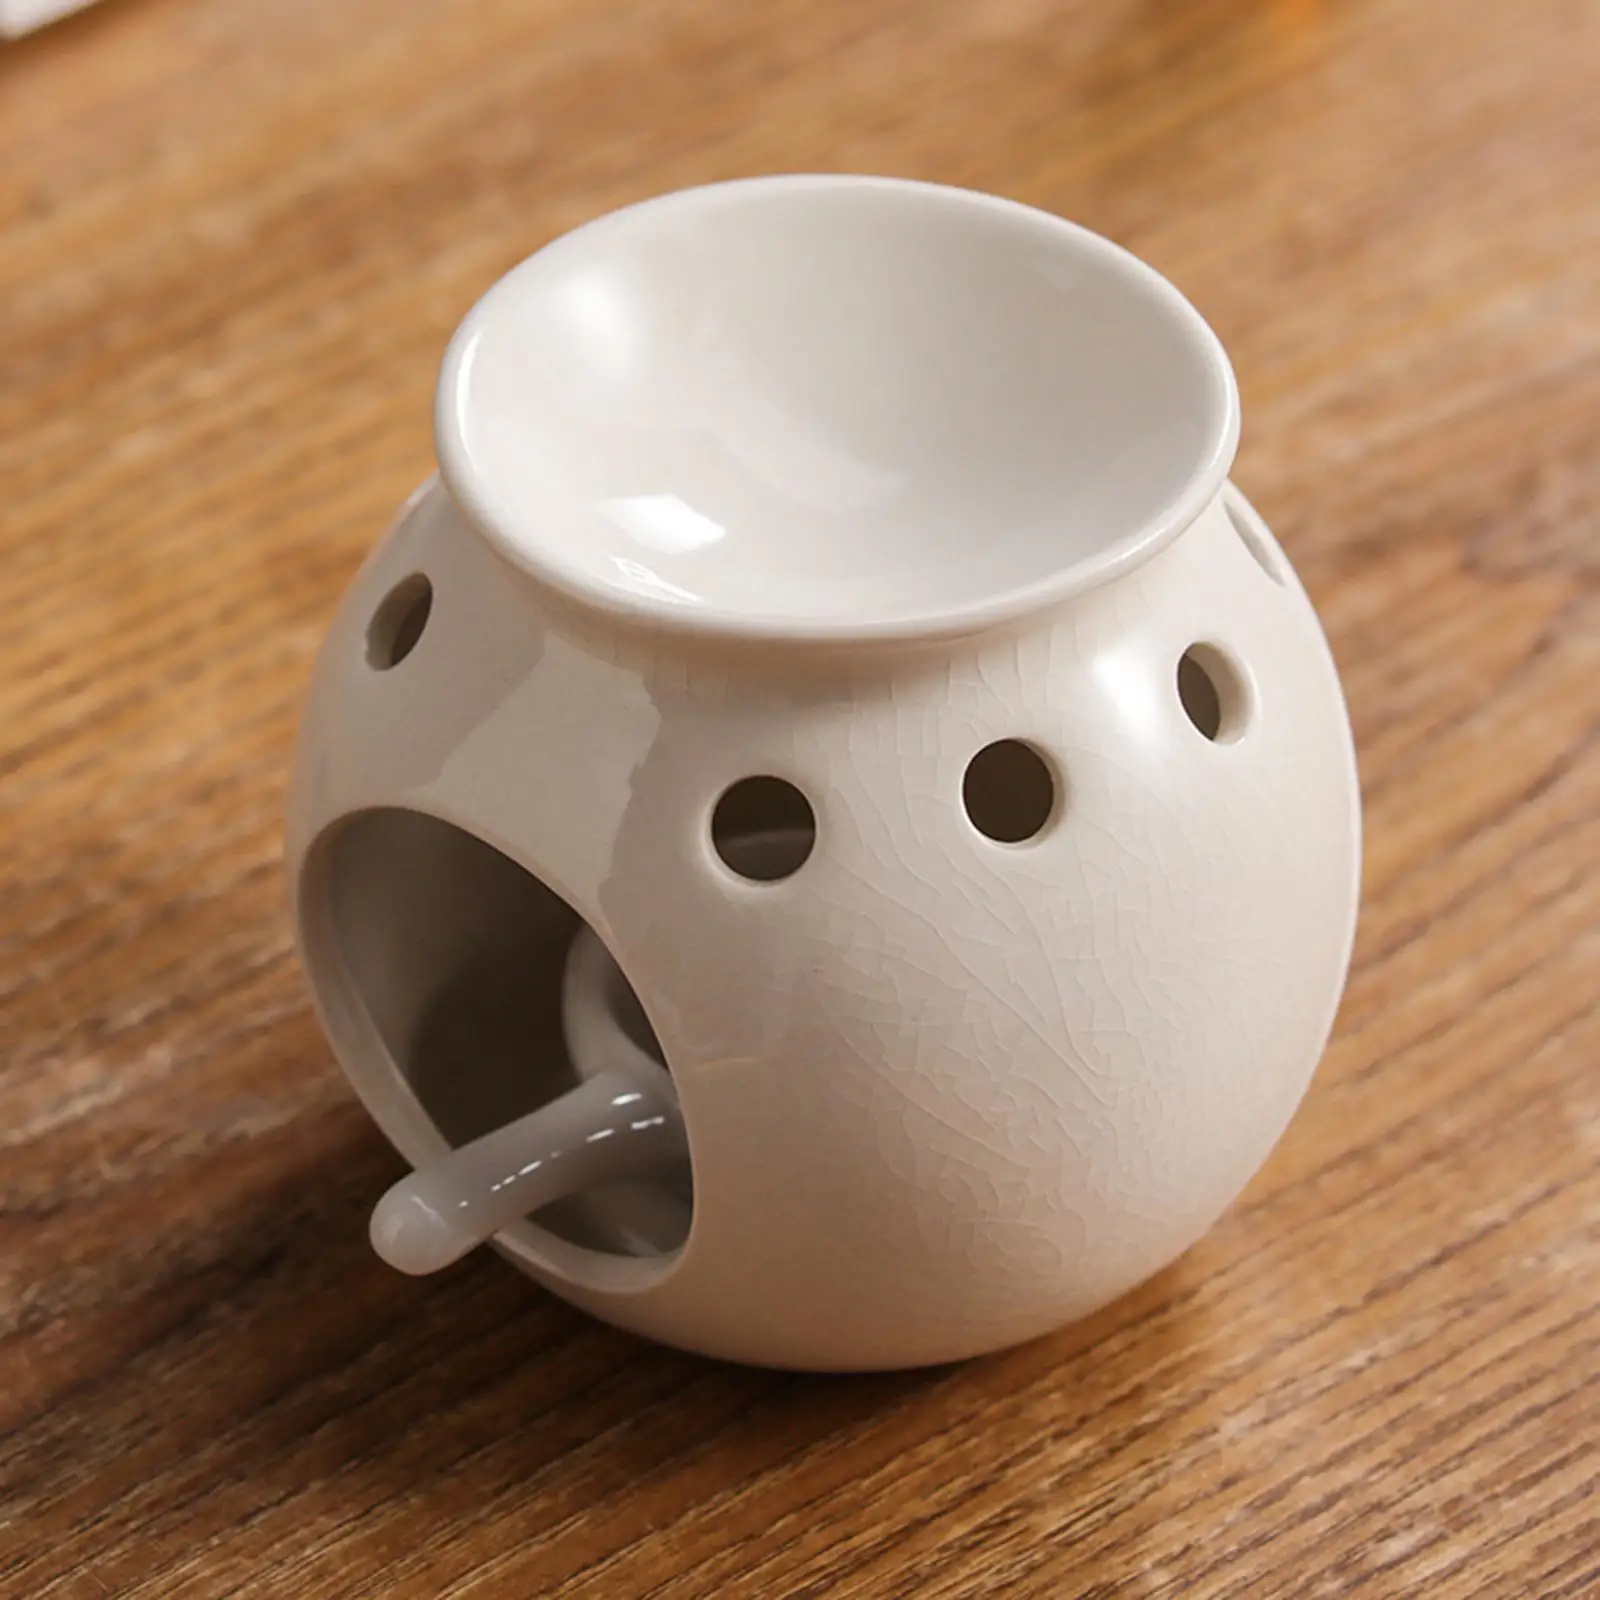 Tealight Holder Melter Wax Oil Tea Light Decor Censer Ceramic Oil Burner for Home Bedroom Yoga SPA Housewarming Gift